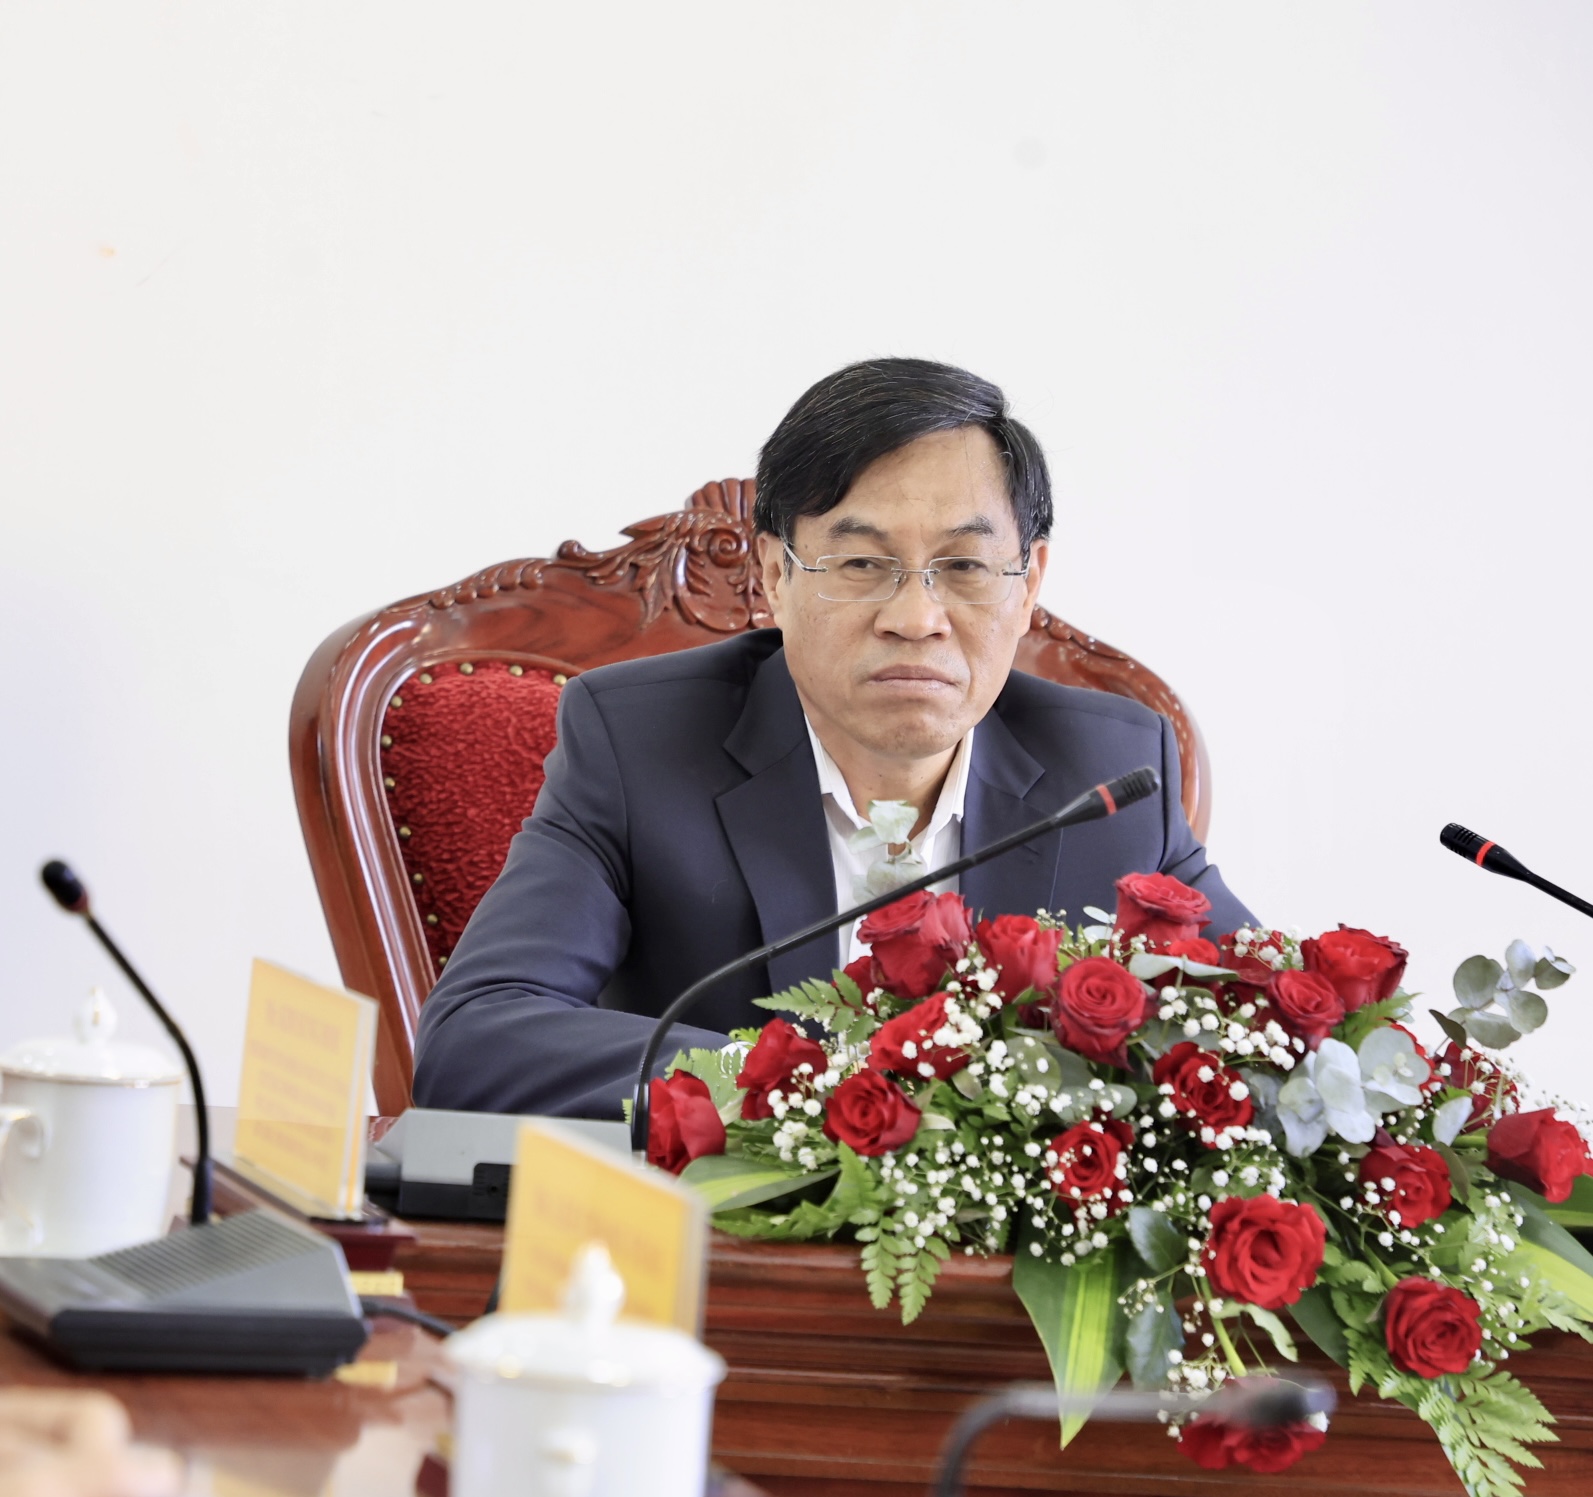 Phó Chủ tịch UBND tỉnh Võ Ngọc Hiệp chủ trì chương trình làm việc giữa tỉnh Lâm Đồng với Hiệp hội KODPIA